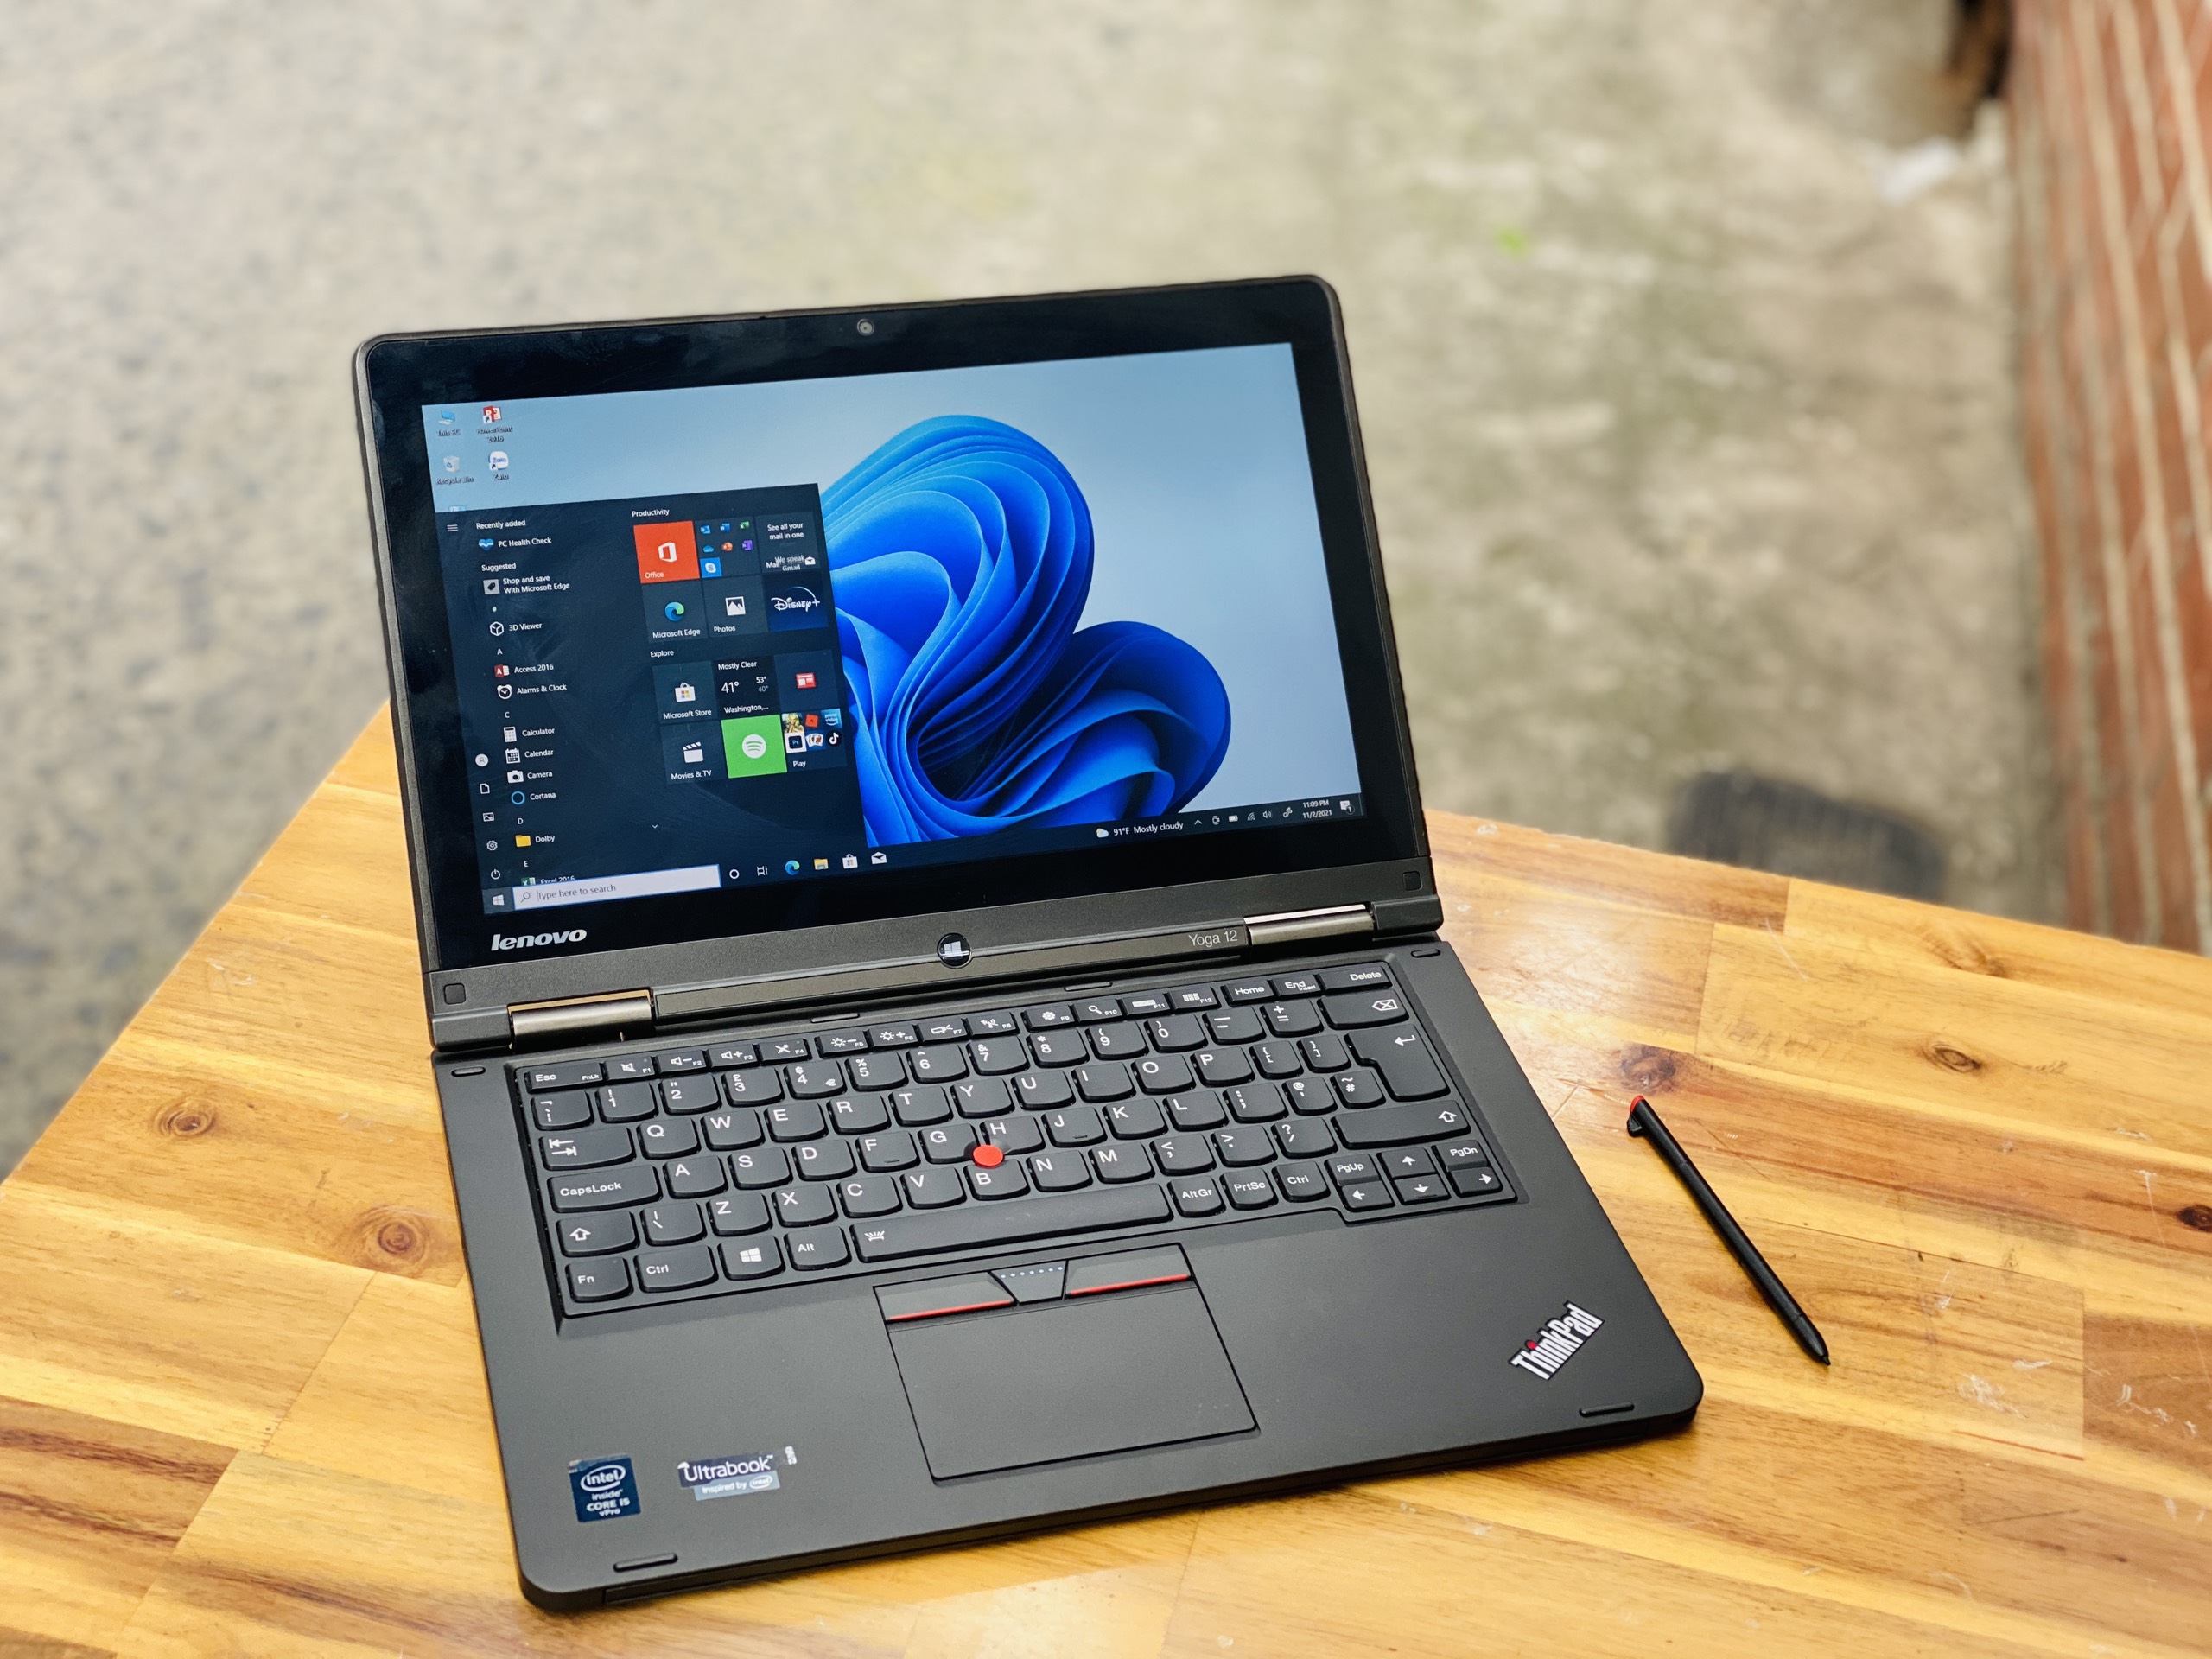 Laptop Lenovo Thinkpad Yoga 12/ i5 5200U/ 8G/ SSD256/ 12.5in/ Cảm ứng/ Xoay 360 độ 2in1/ Siêu Bền/ Giá rẻ3